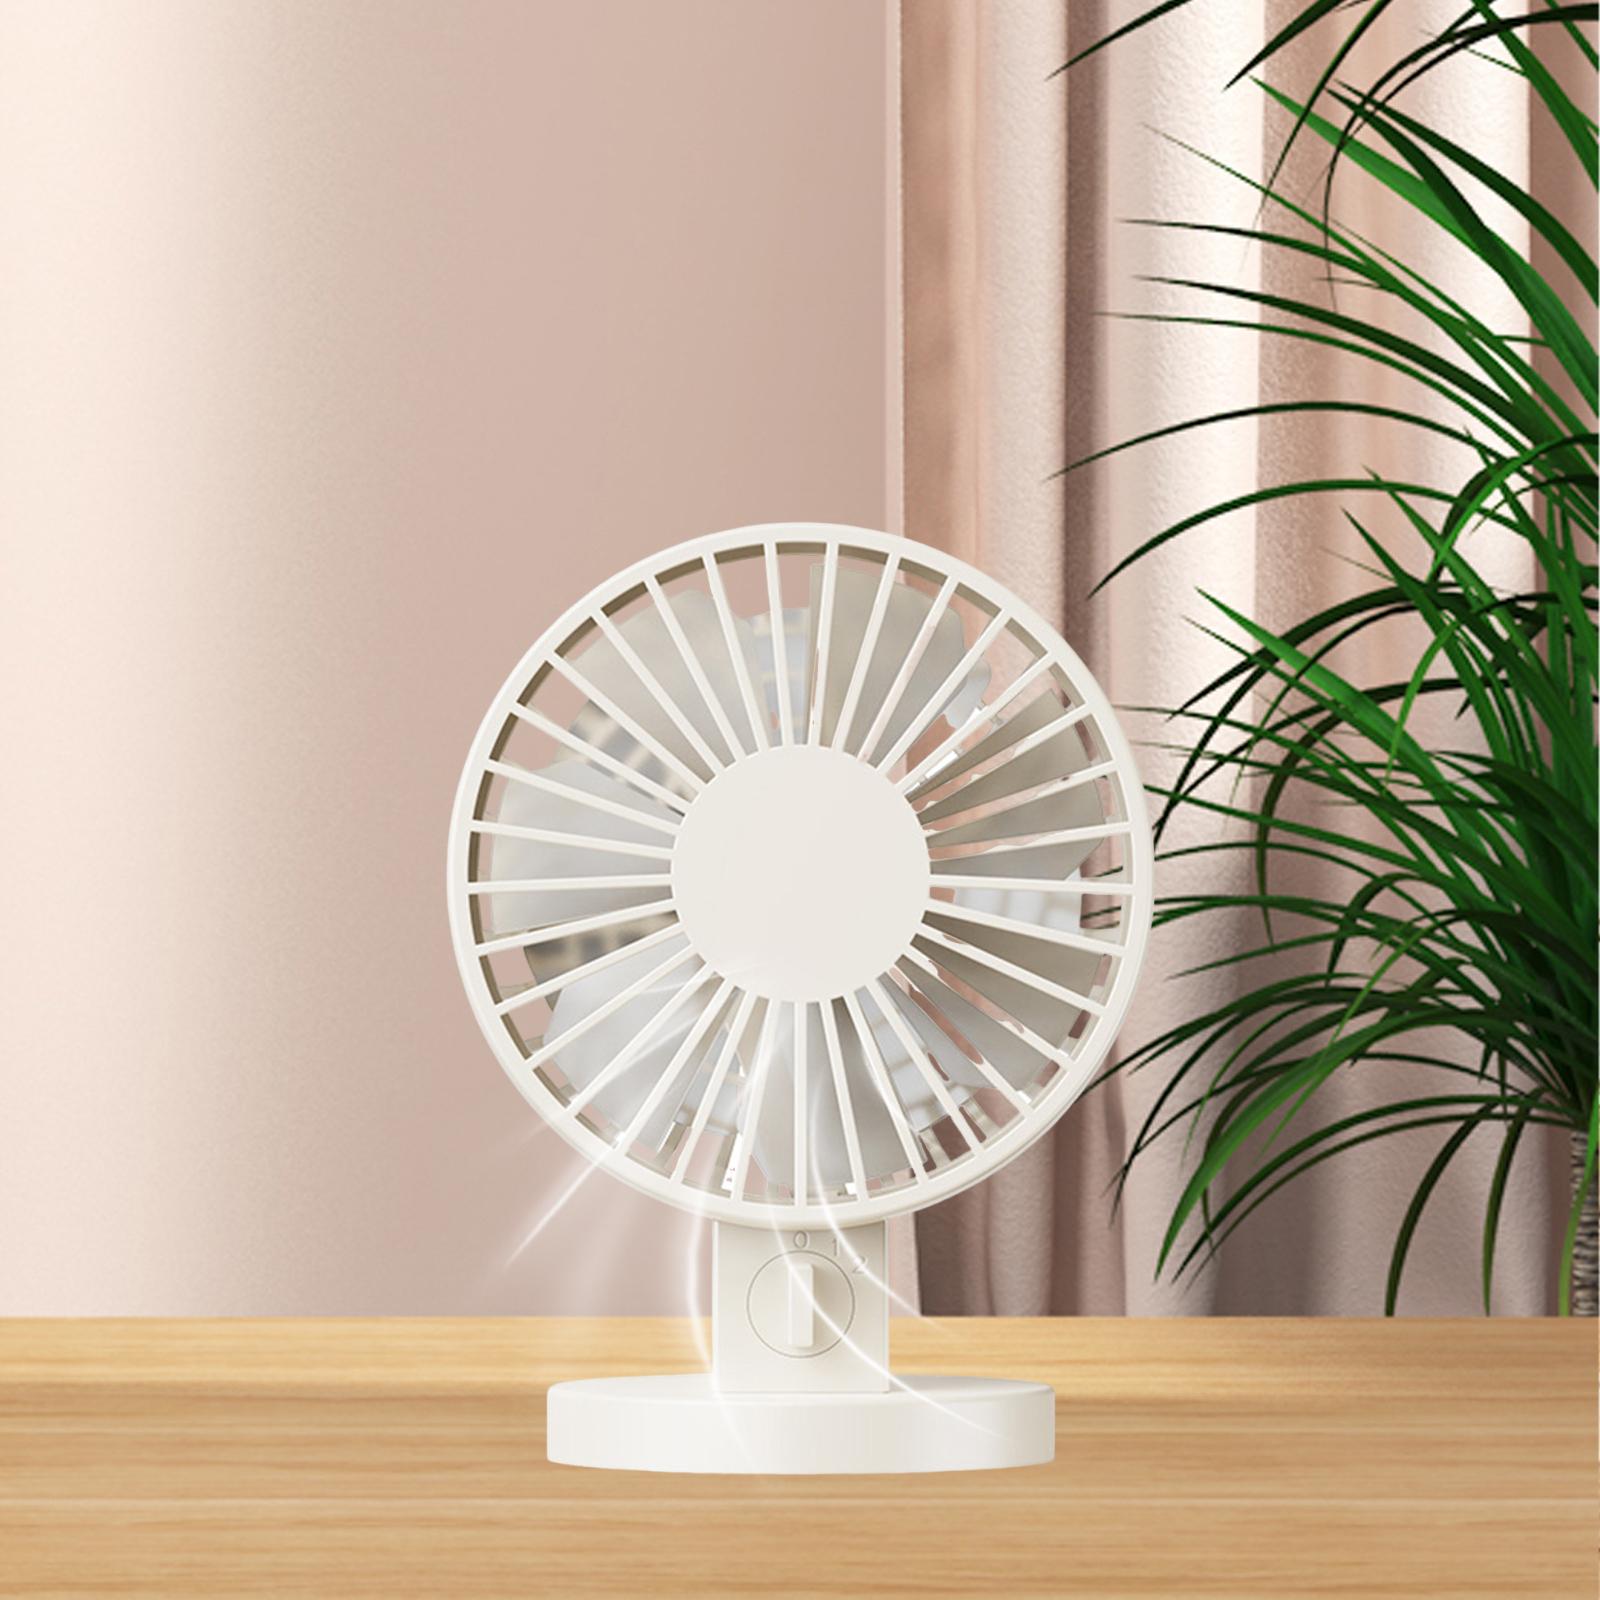 Small USB Desktop Fan Cooling Fan Height 13.5cm for Indoor Outdoor Versatile Beige